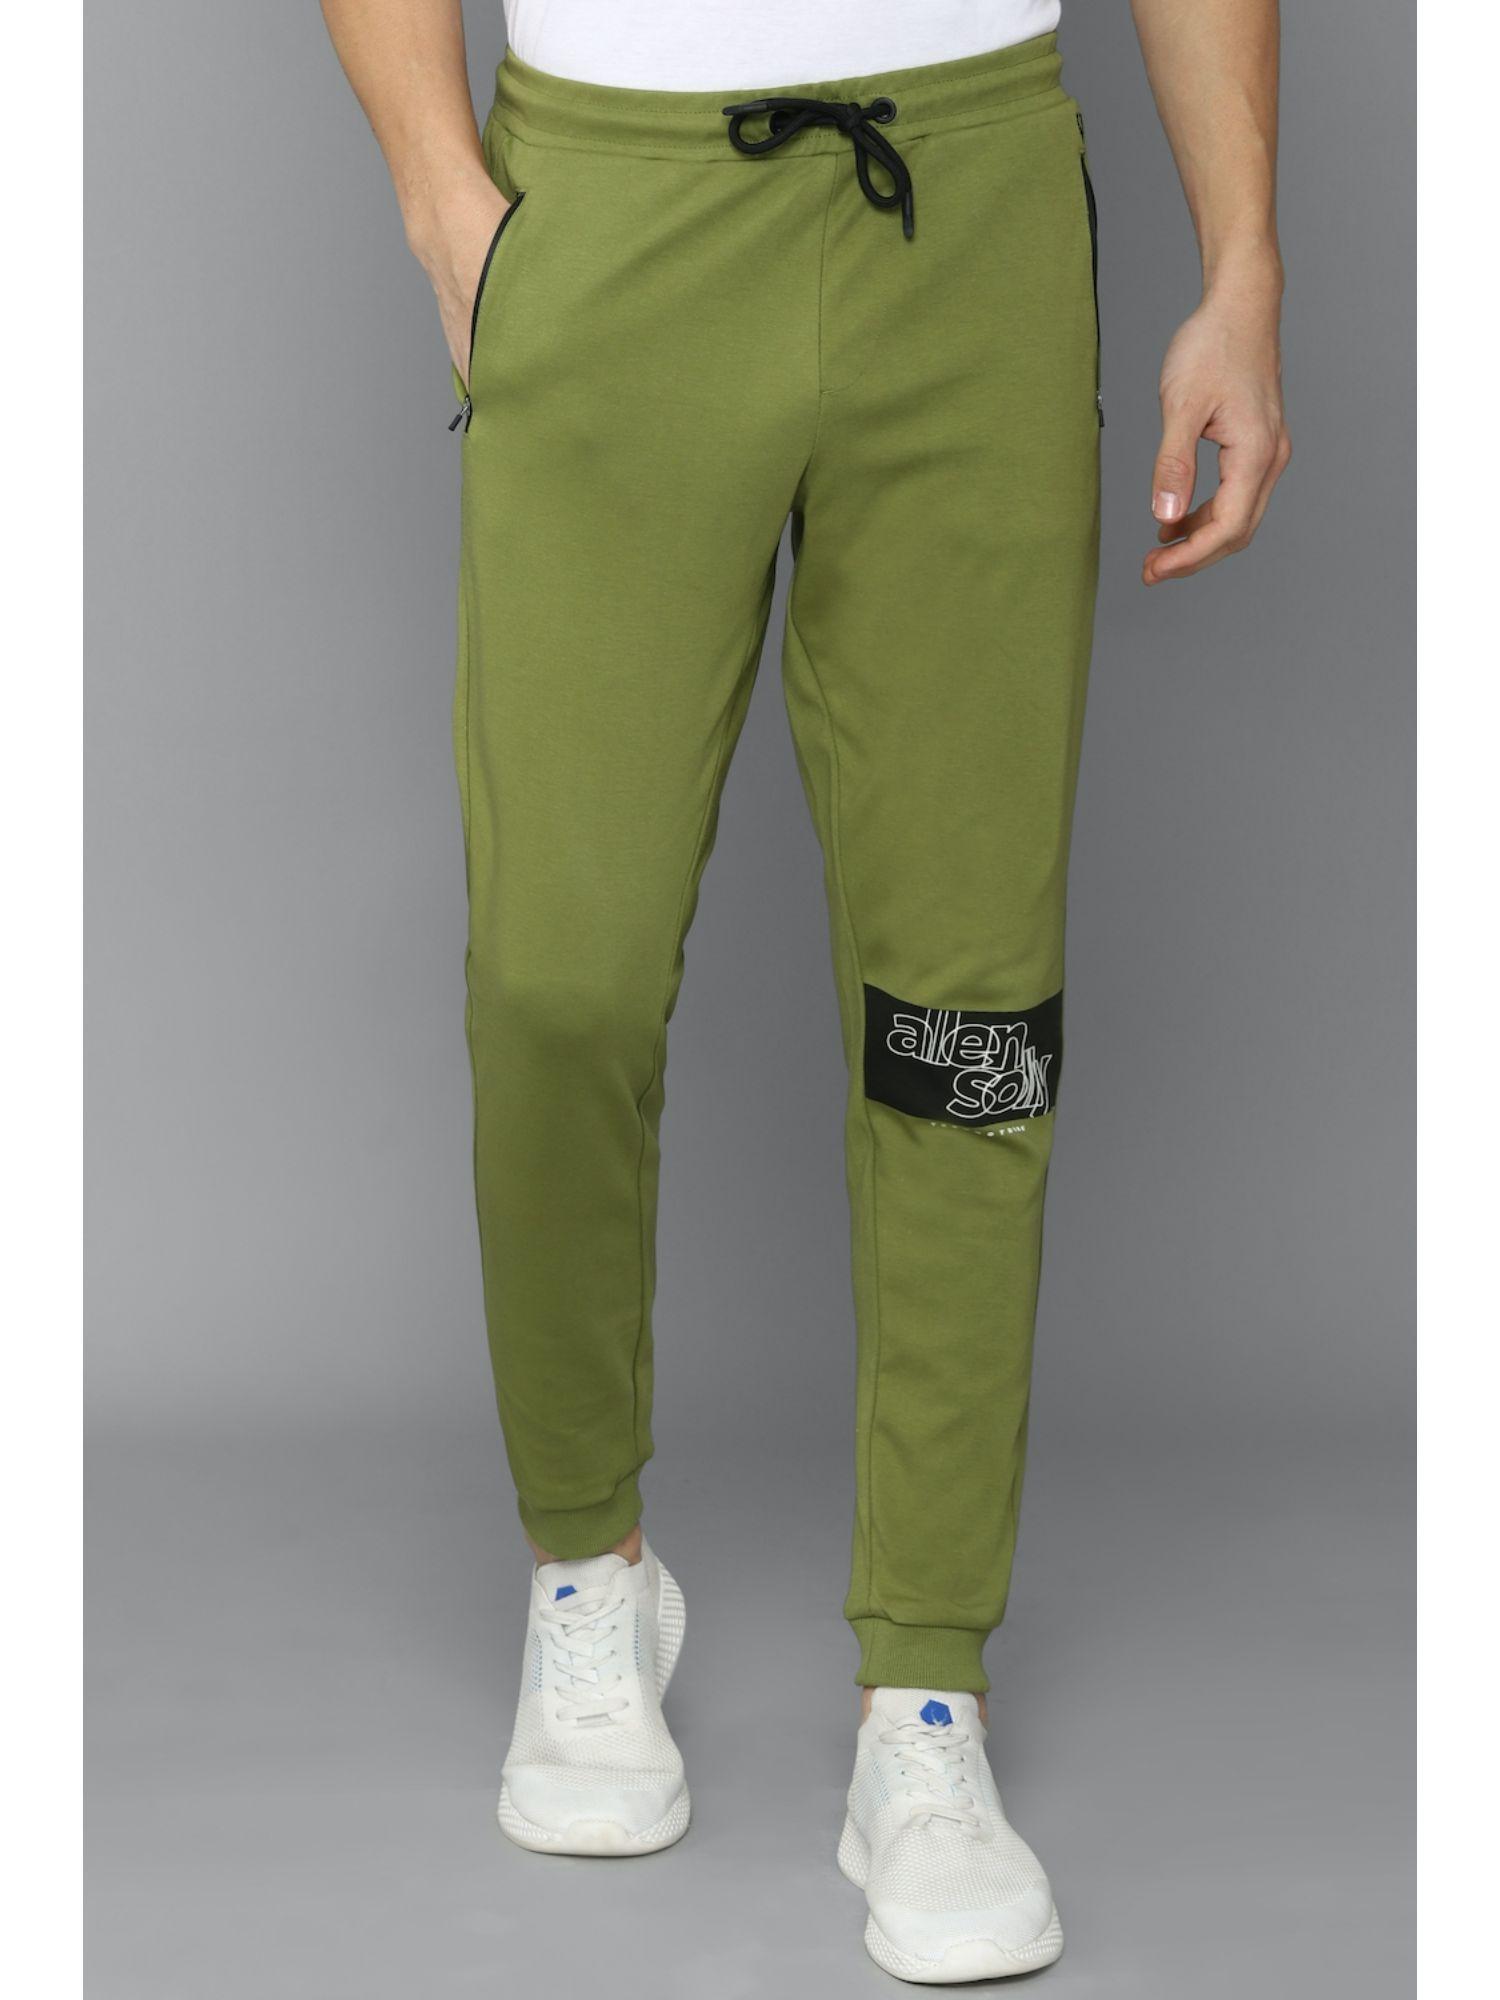 mens graphic green jogger pants